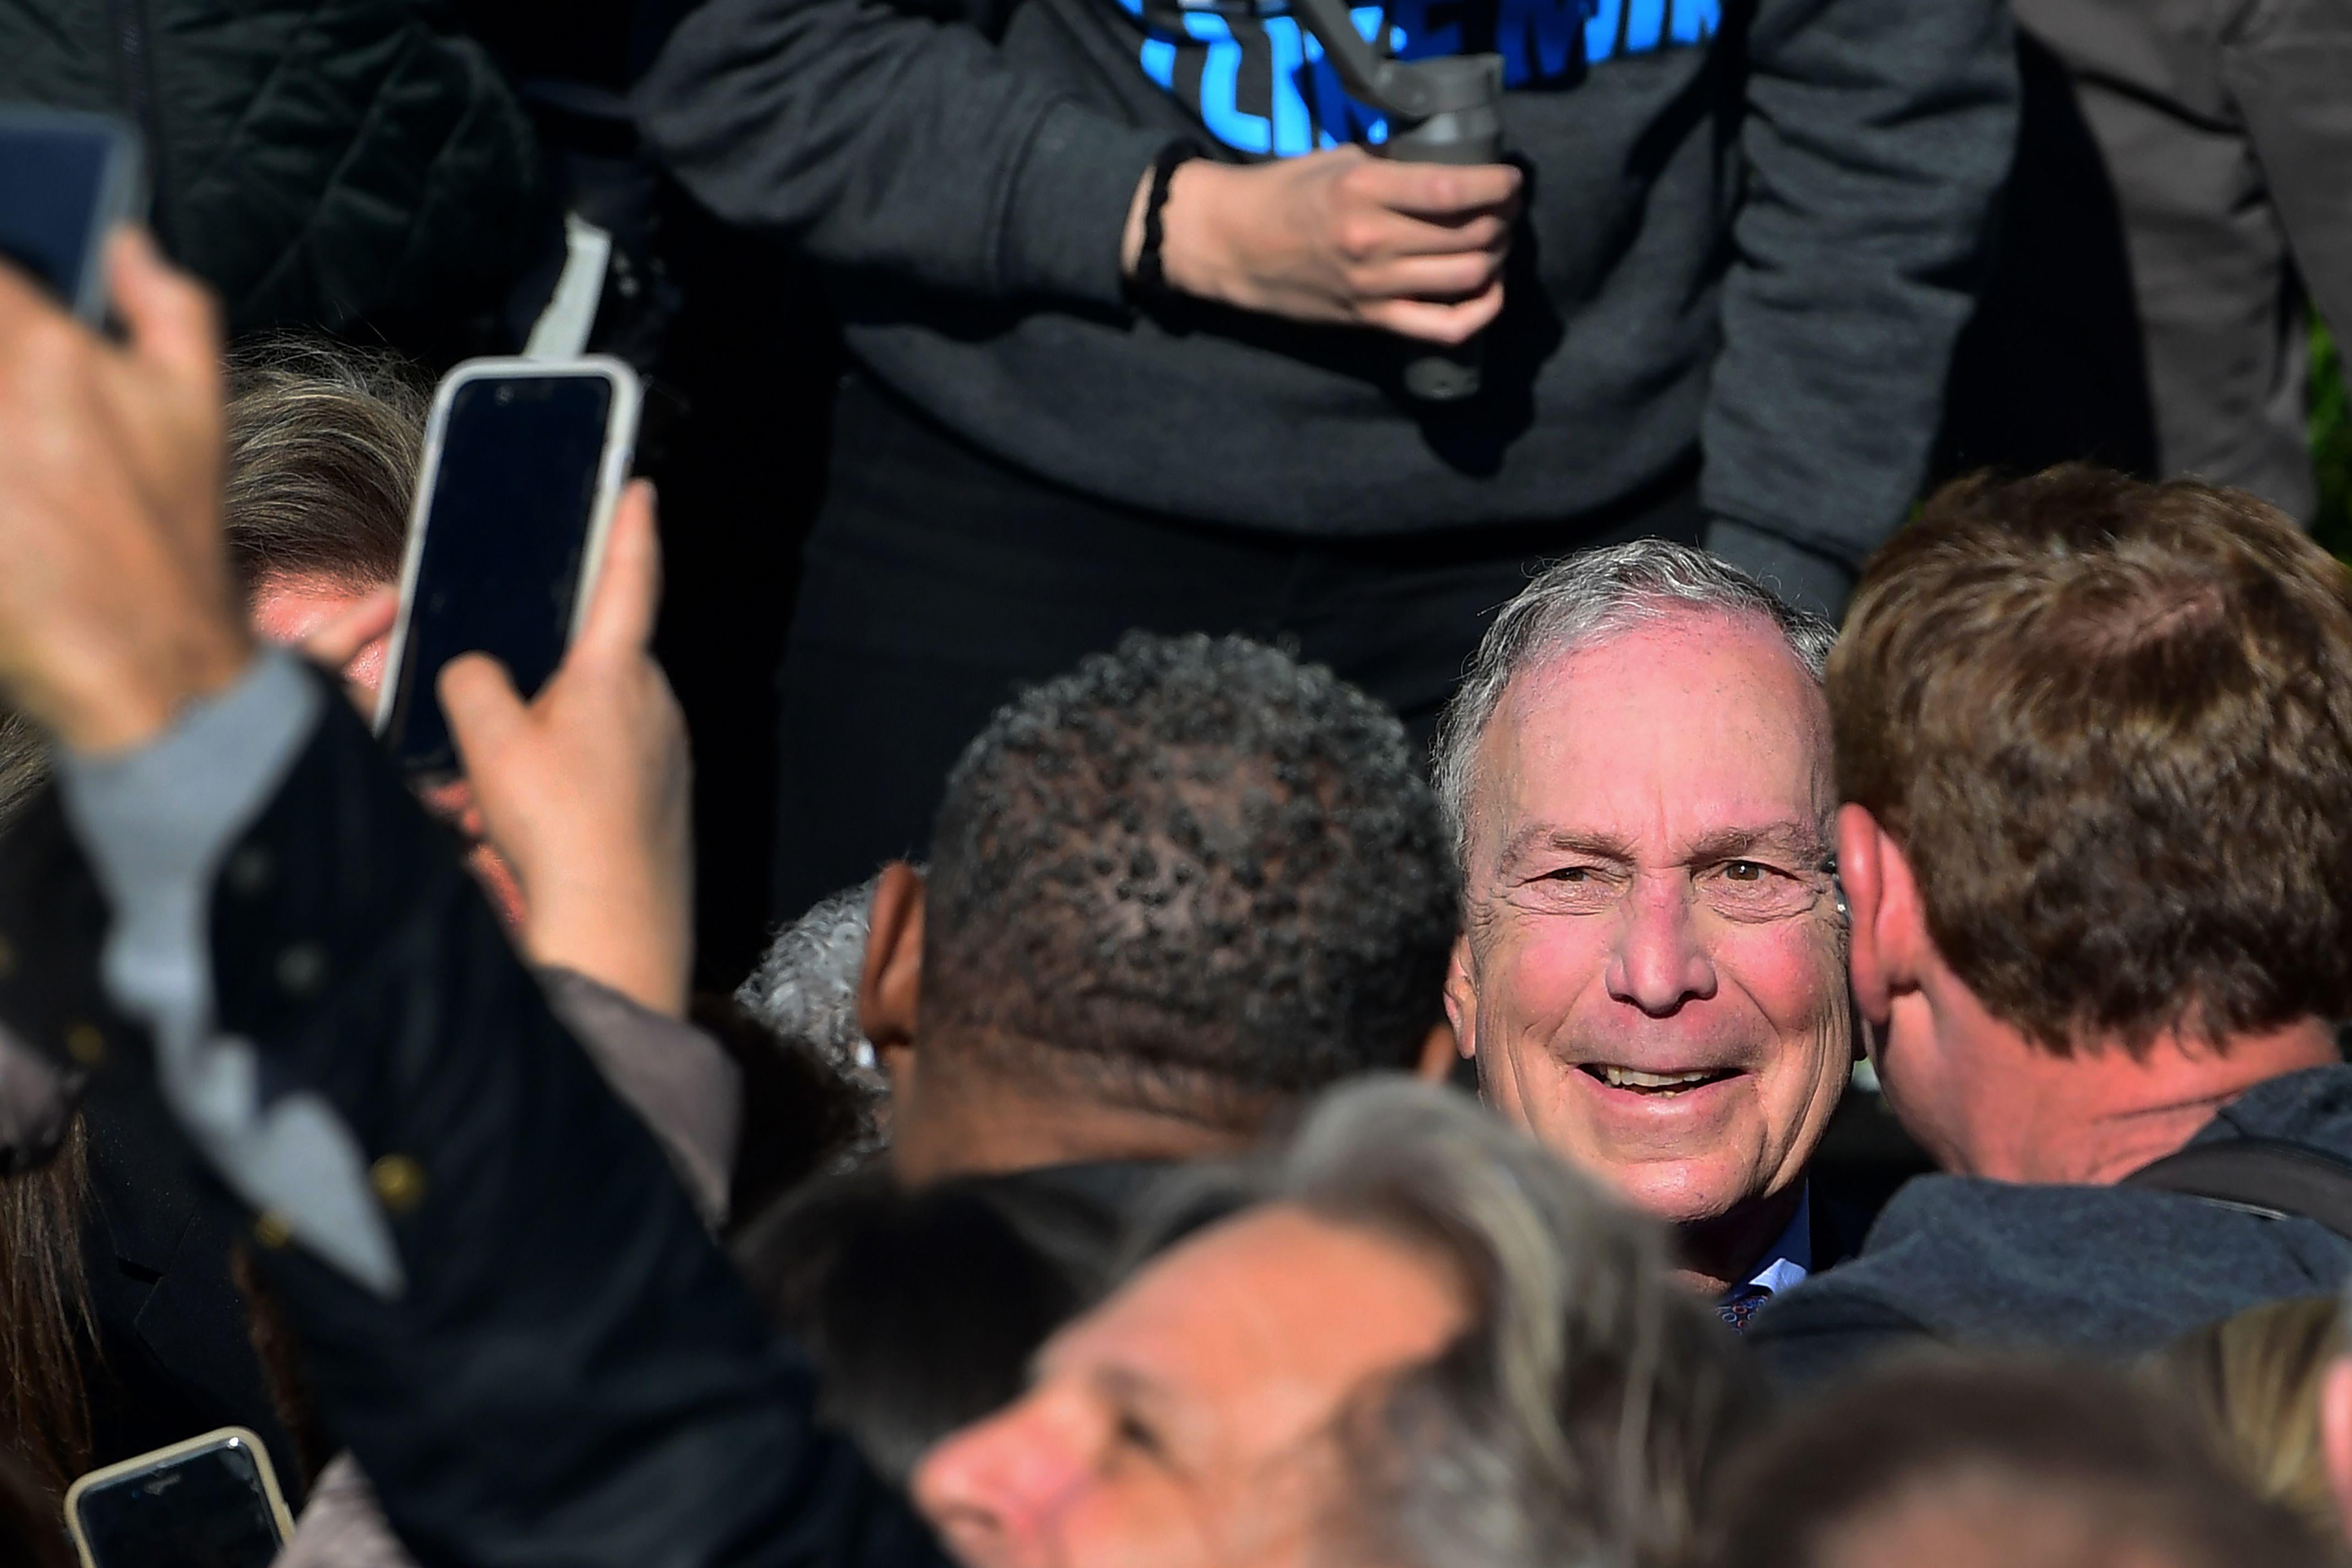 Men carrying smartphones surround Michael Bloomberg.